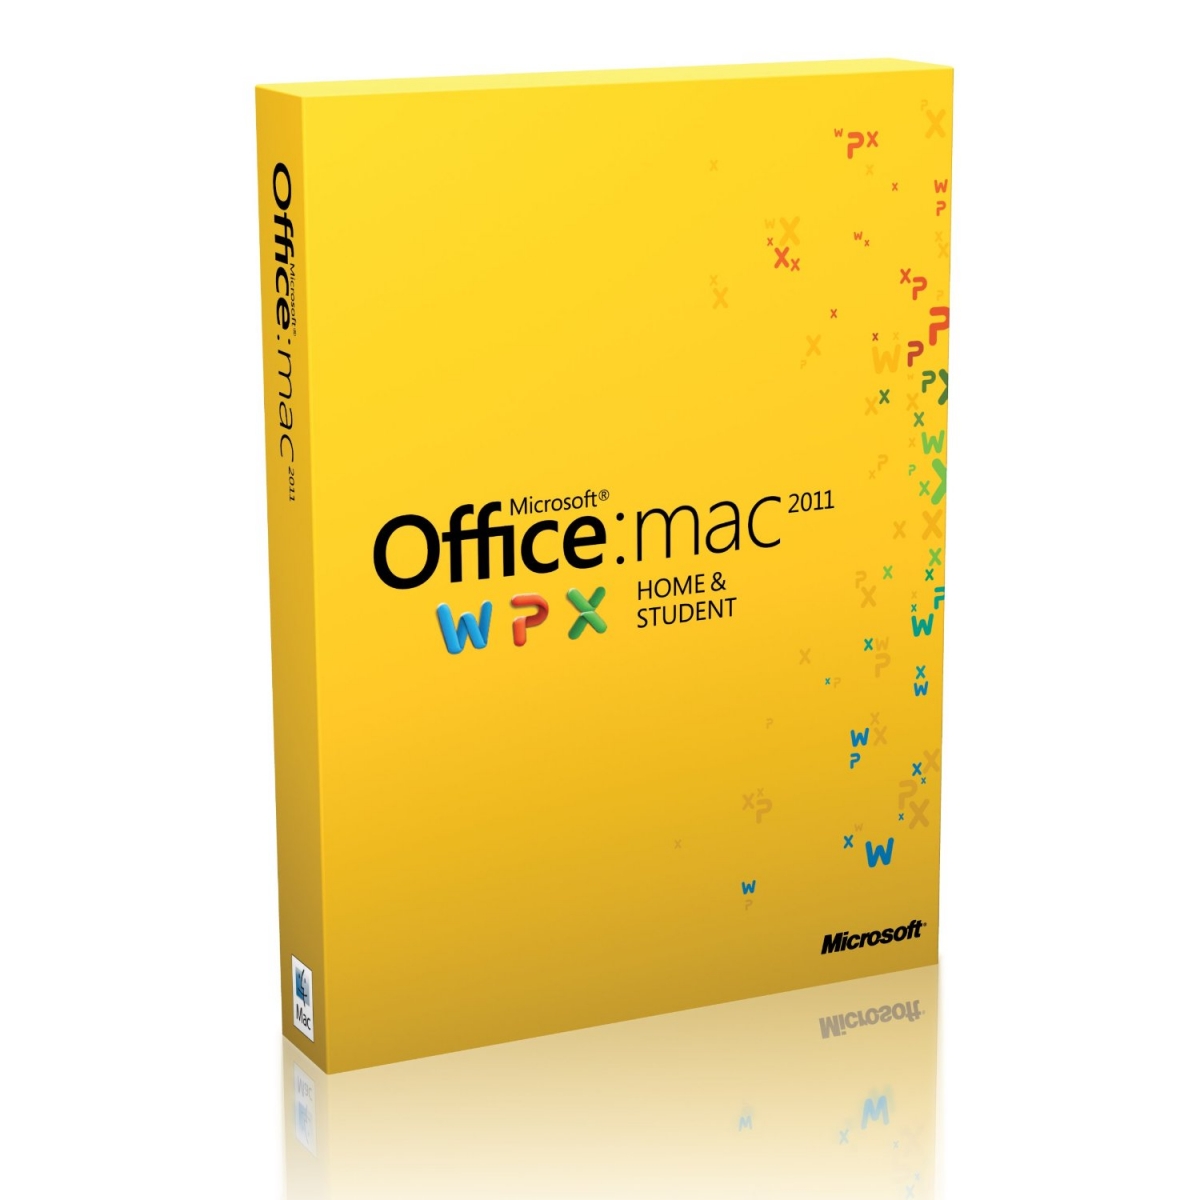 Update microsoft office 2011 mac